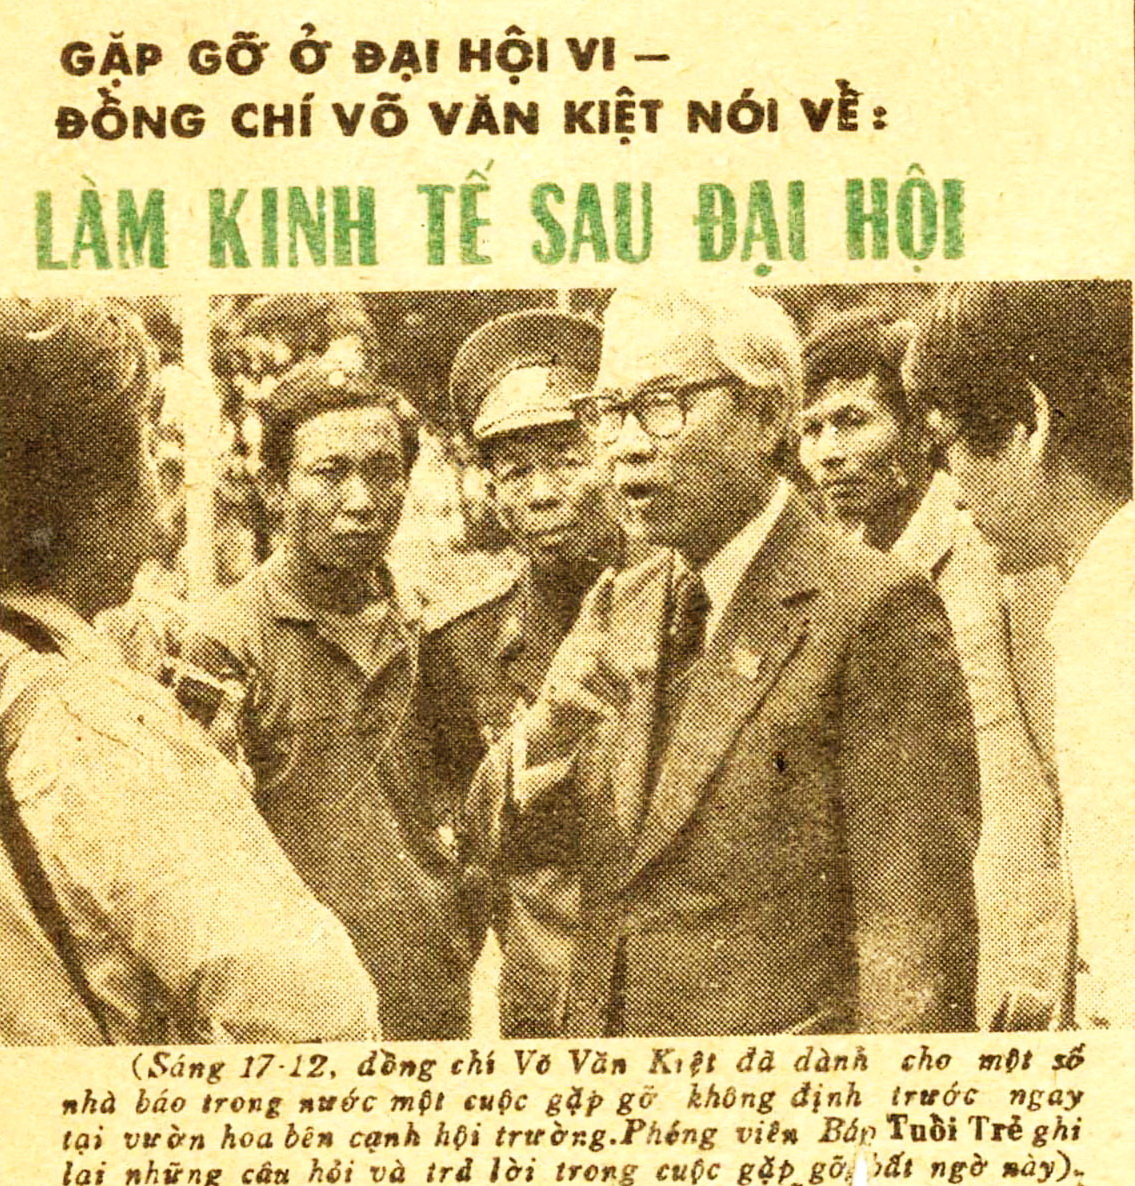 Nhiều phóng viên đã tìm gặp và phỏng vấn ông Võ Văn Kiệt - người sau này tiếp tục đẩy mạnh công cuộc đổi mới trên cương vị Thủ tướng - Ảnh: Huỳnh Sơn Phước